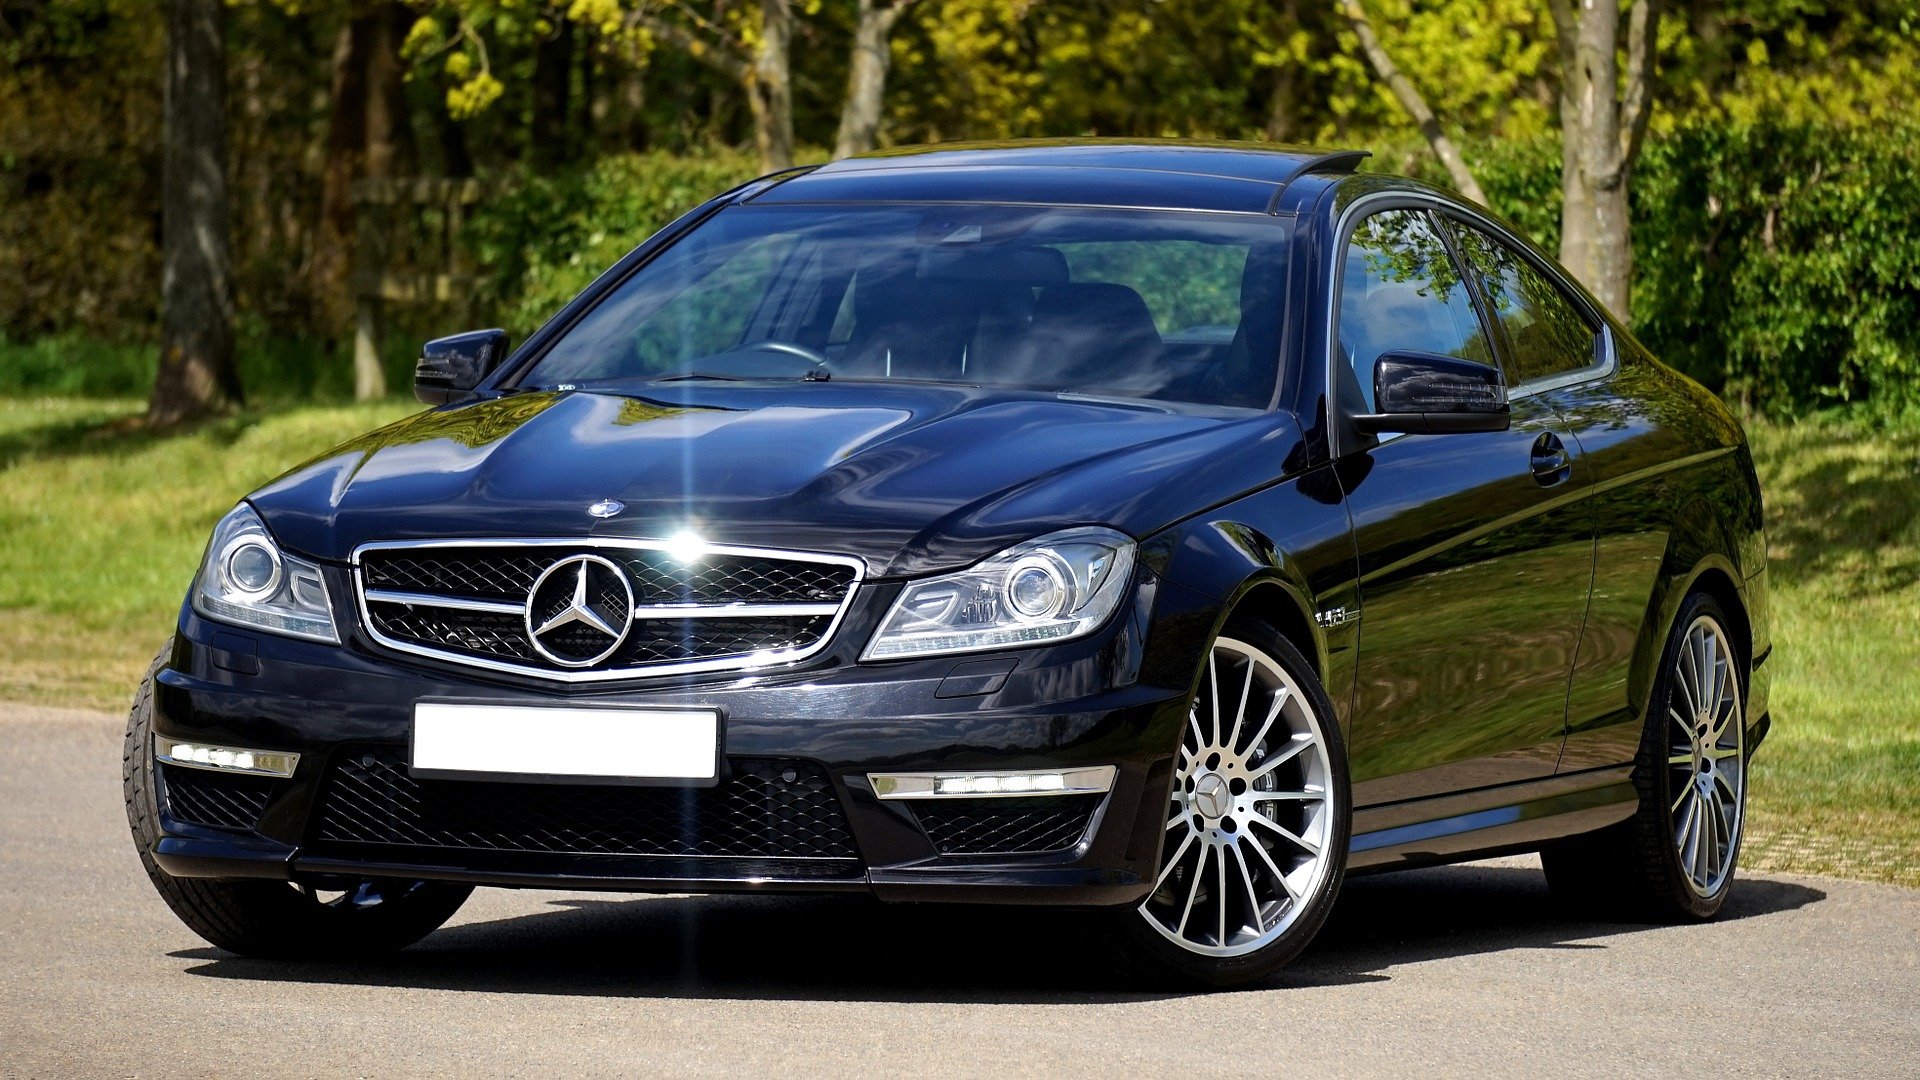 Un Mercedes sedán. | Foto: Pixabay